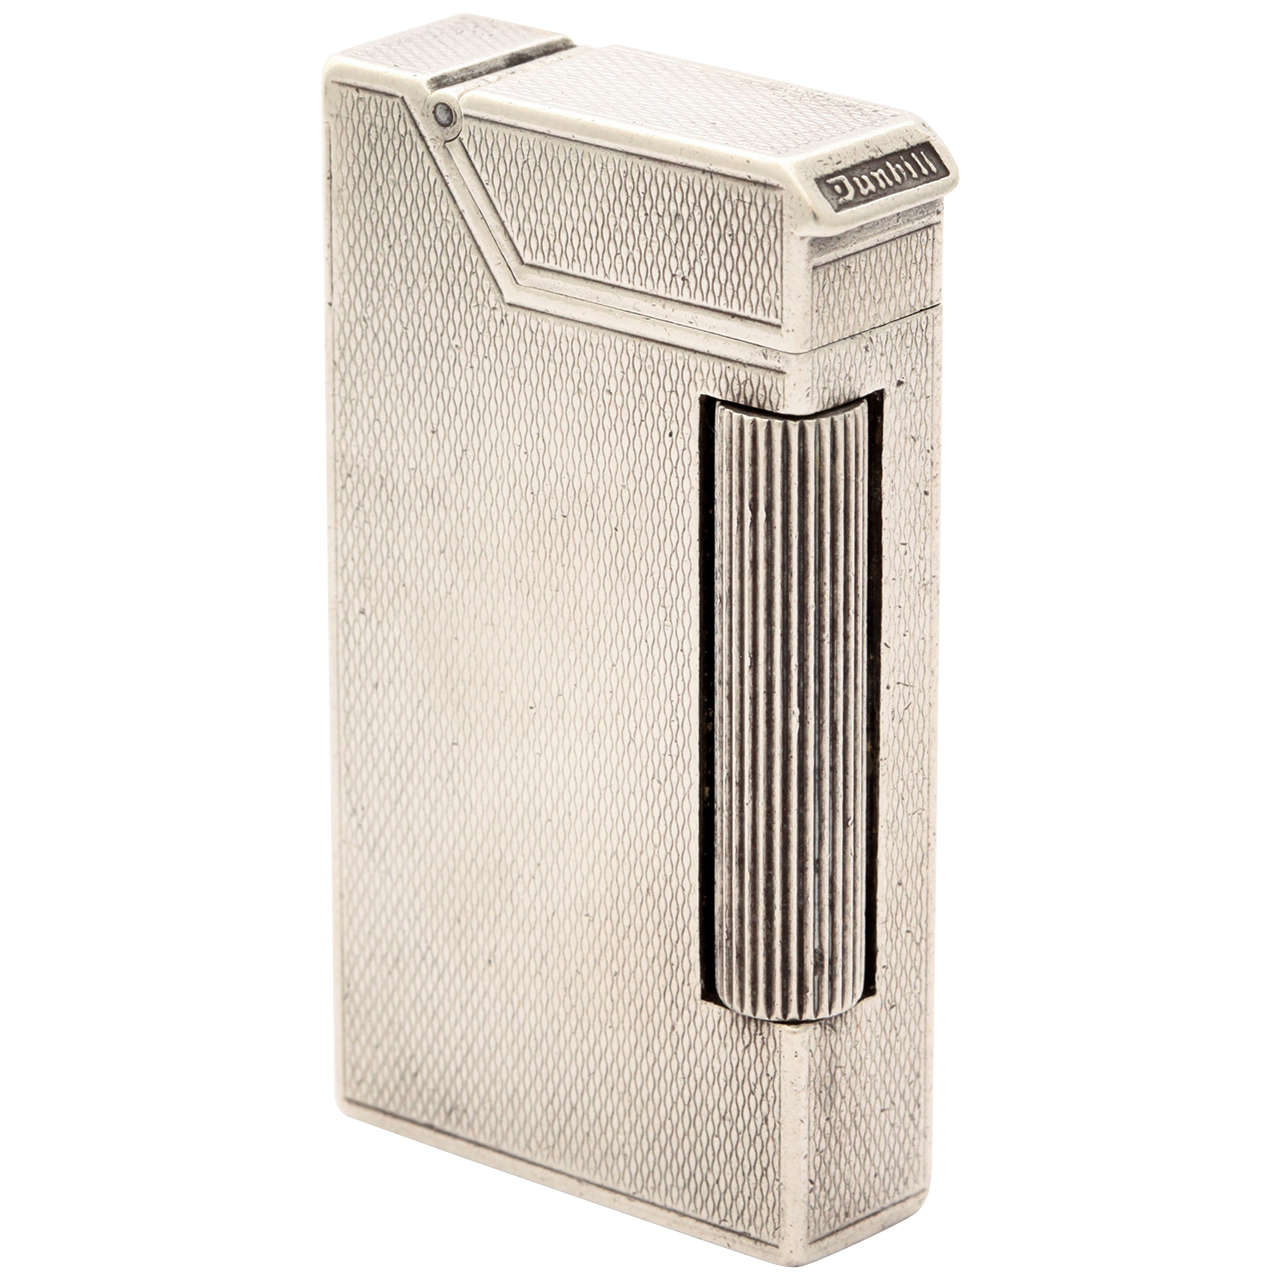 Boxed Sterling Silver Dunhill Broadboy Pocket Lighter